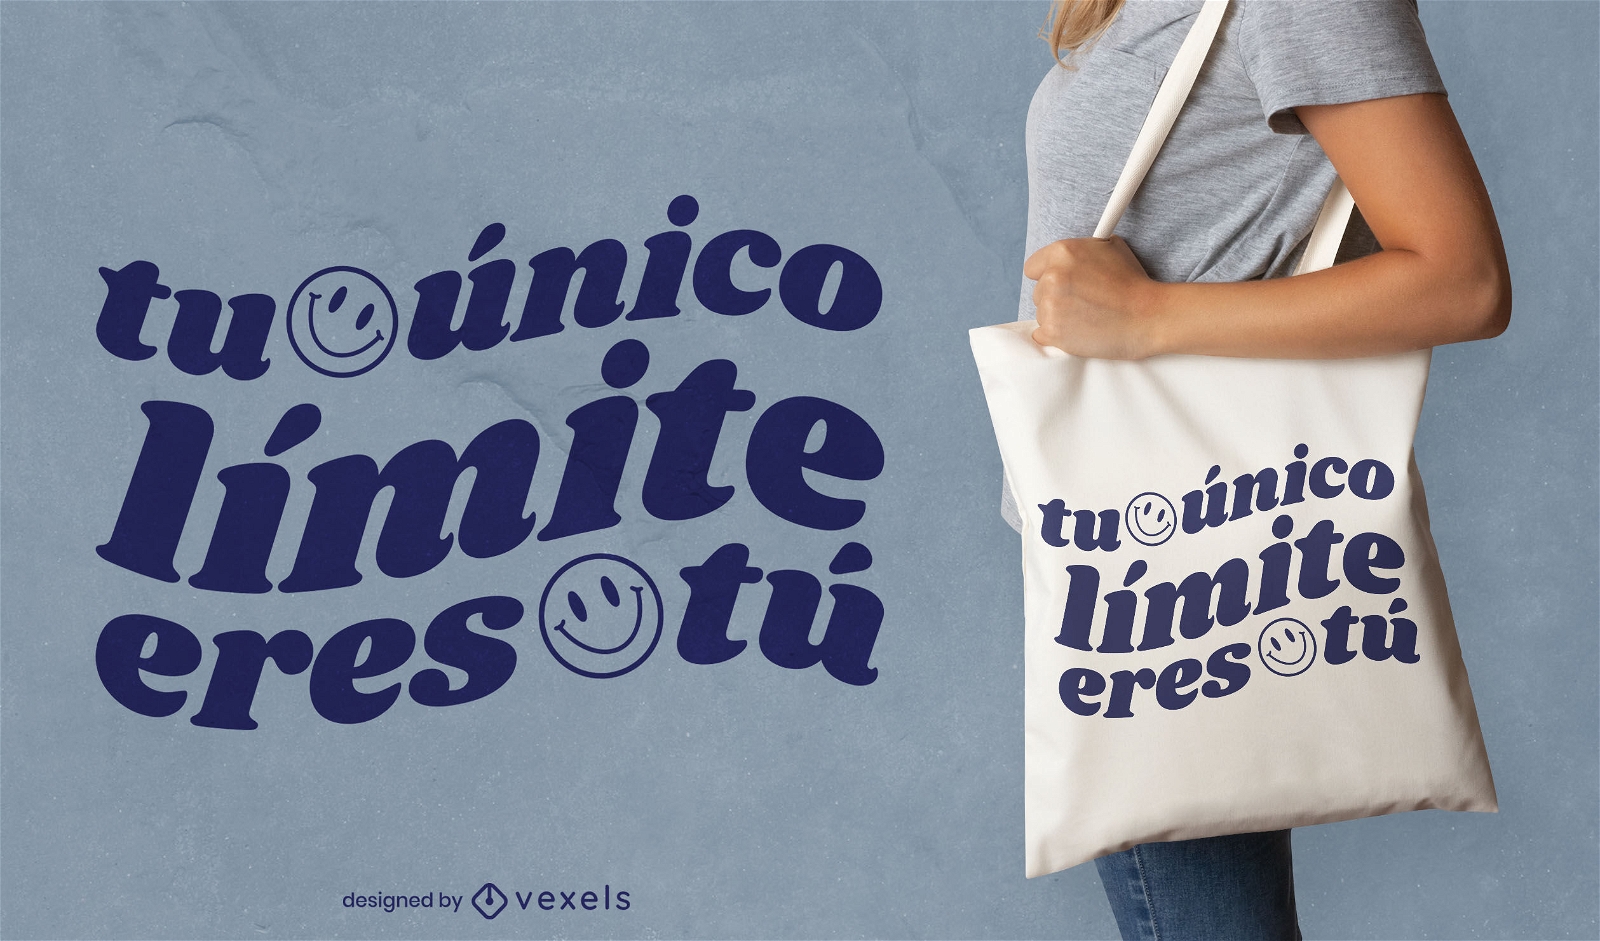 Spanisches Zitat-Einkaufstaschendesign des Smileygesichtes